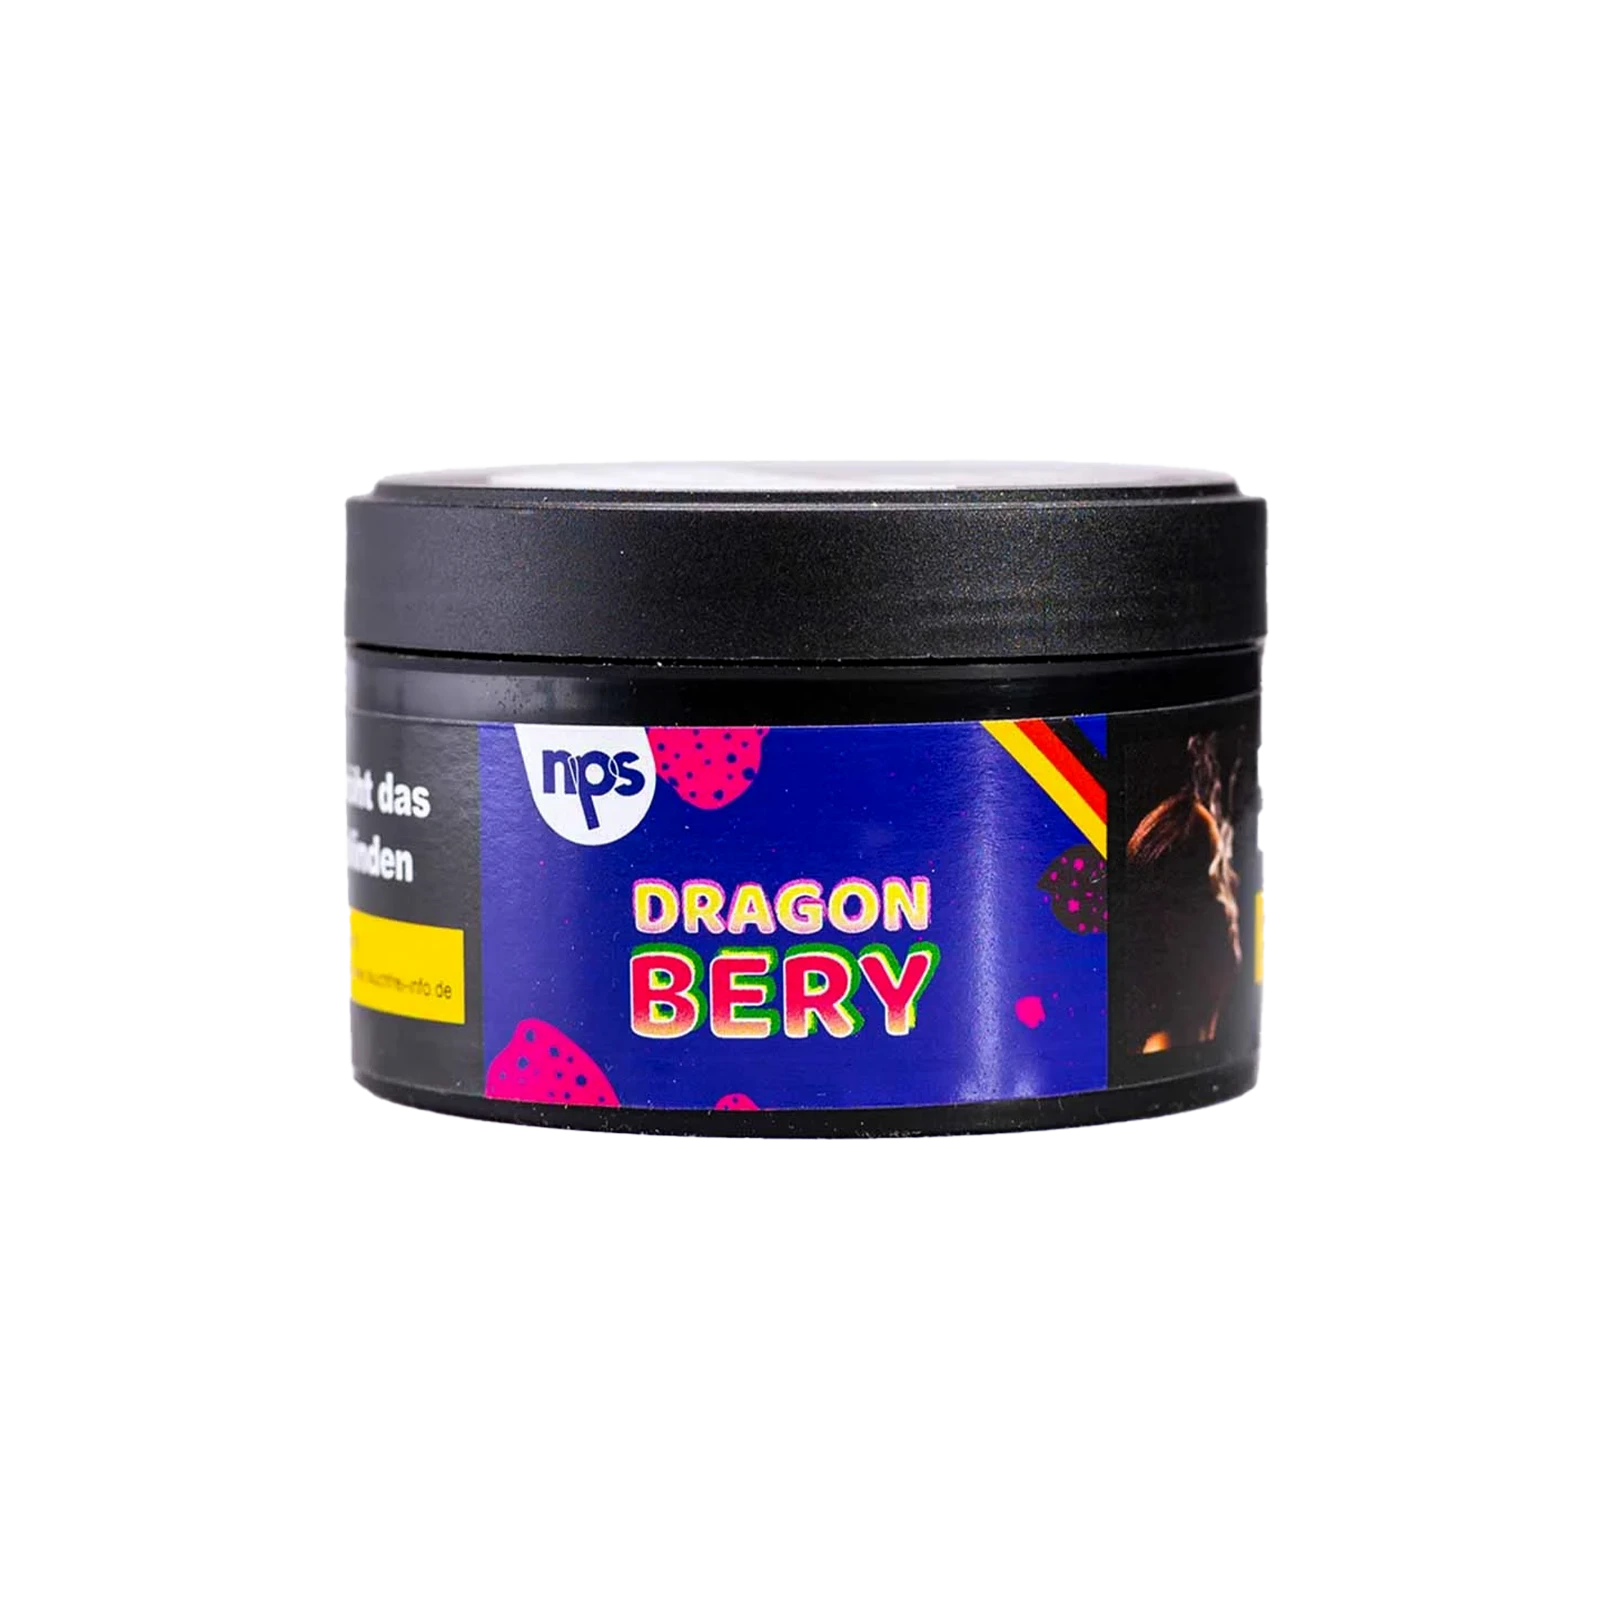 Nargilem - Dragon Bery - 25 g | Shisha-Tabak Sorten günstig kaufen 1